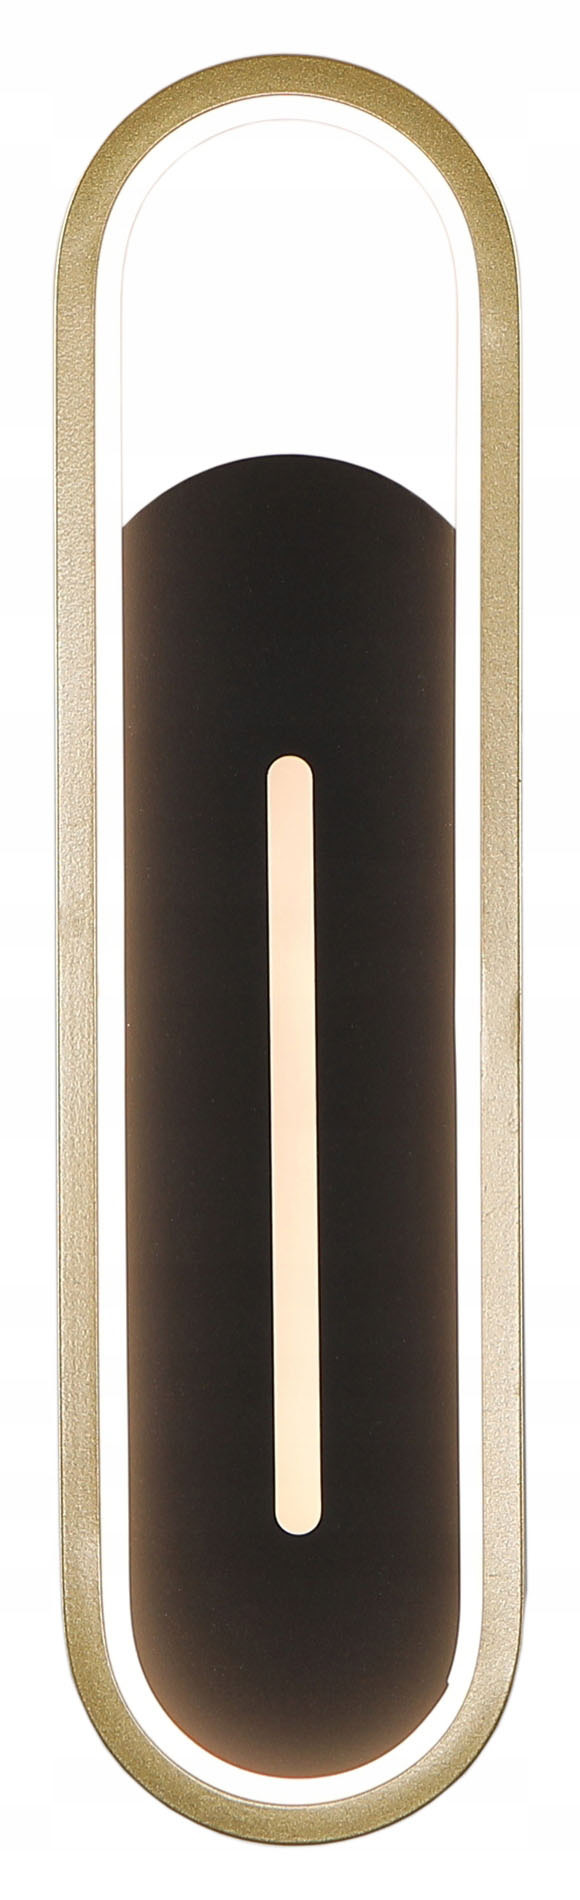 Czarno-złoty kinkiet ścienny HAWANA, eksponujący minimalistyczny i nowoczesny design. Wobako